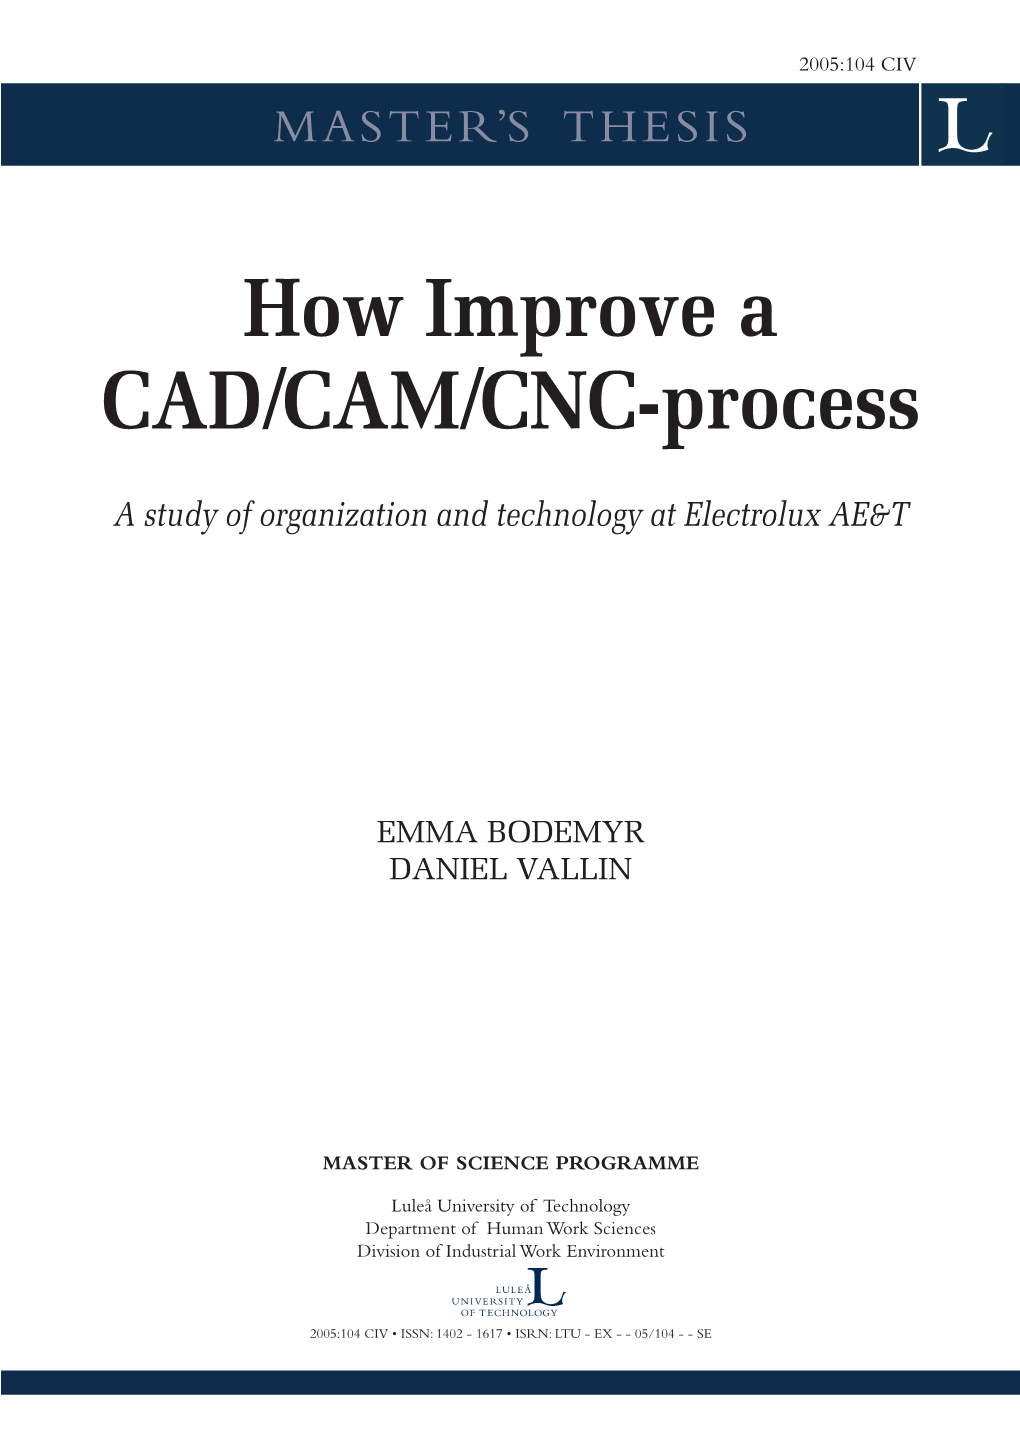 How to Improve a CAD/CAM/CNC